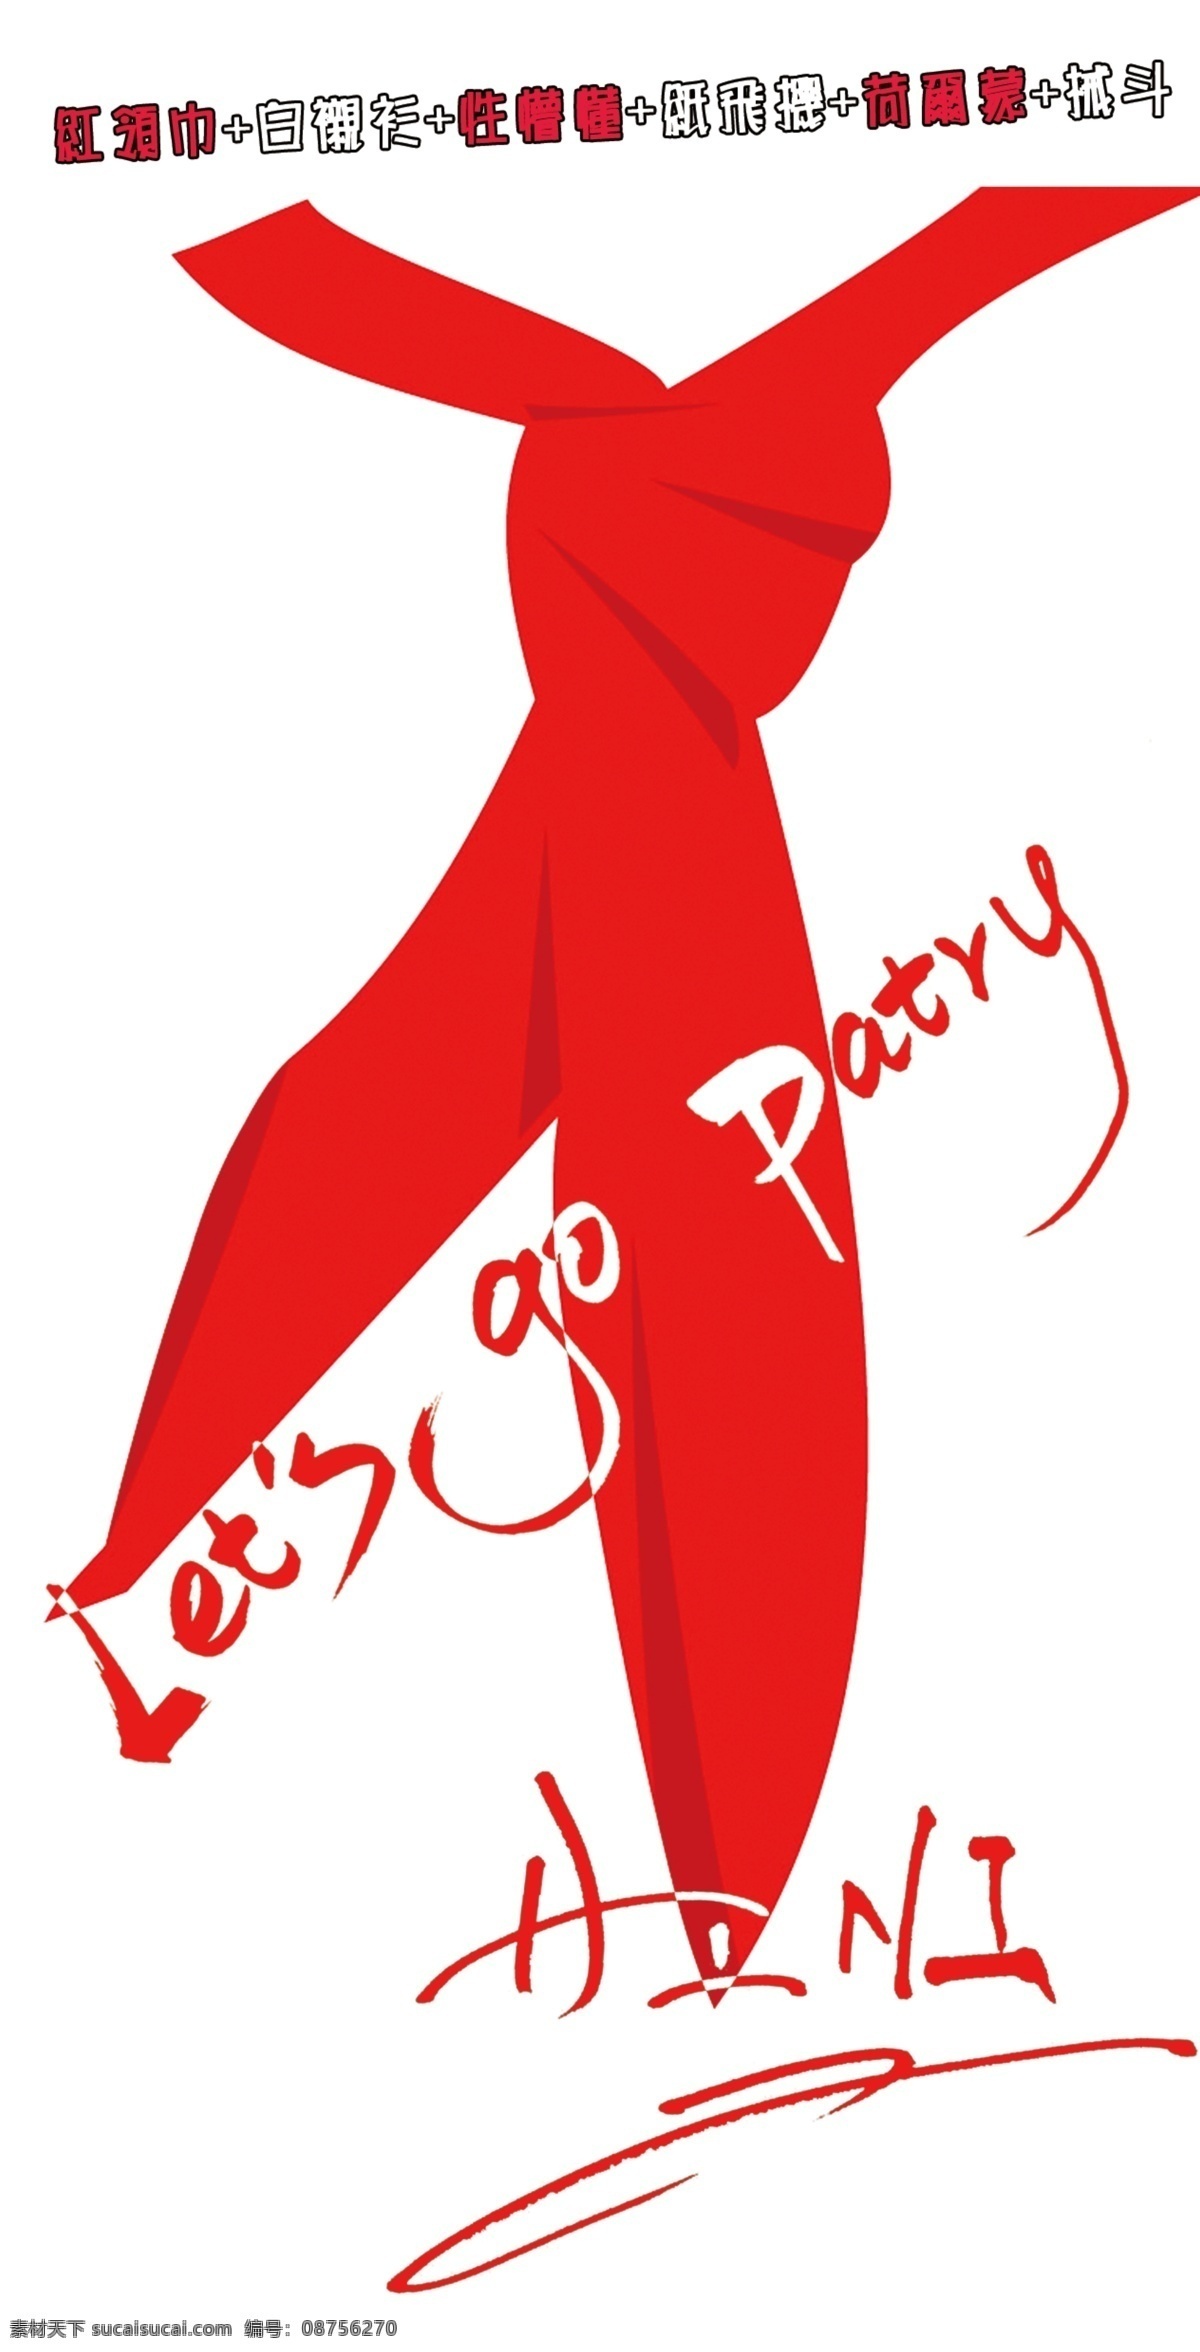 派对 邀请涵 封面 红领巾 青春 性懵懂 画册设计 广告设计模板 源文件